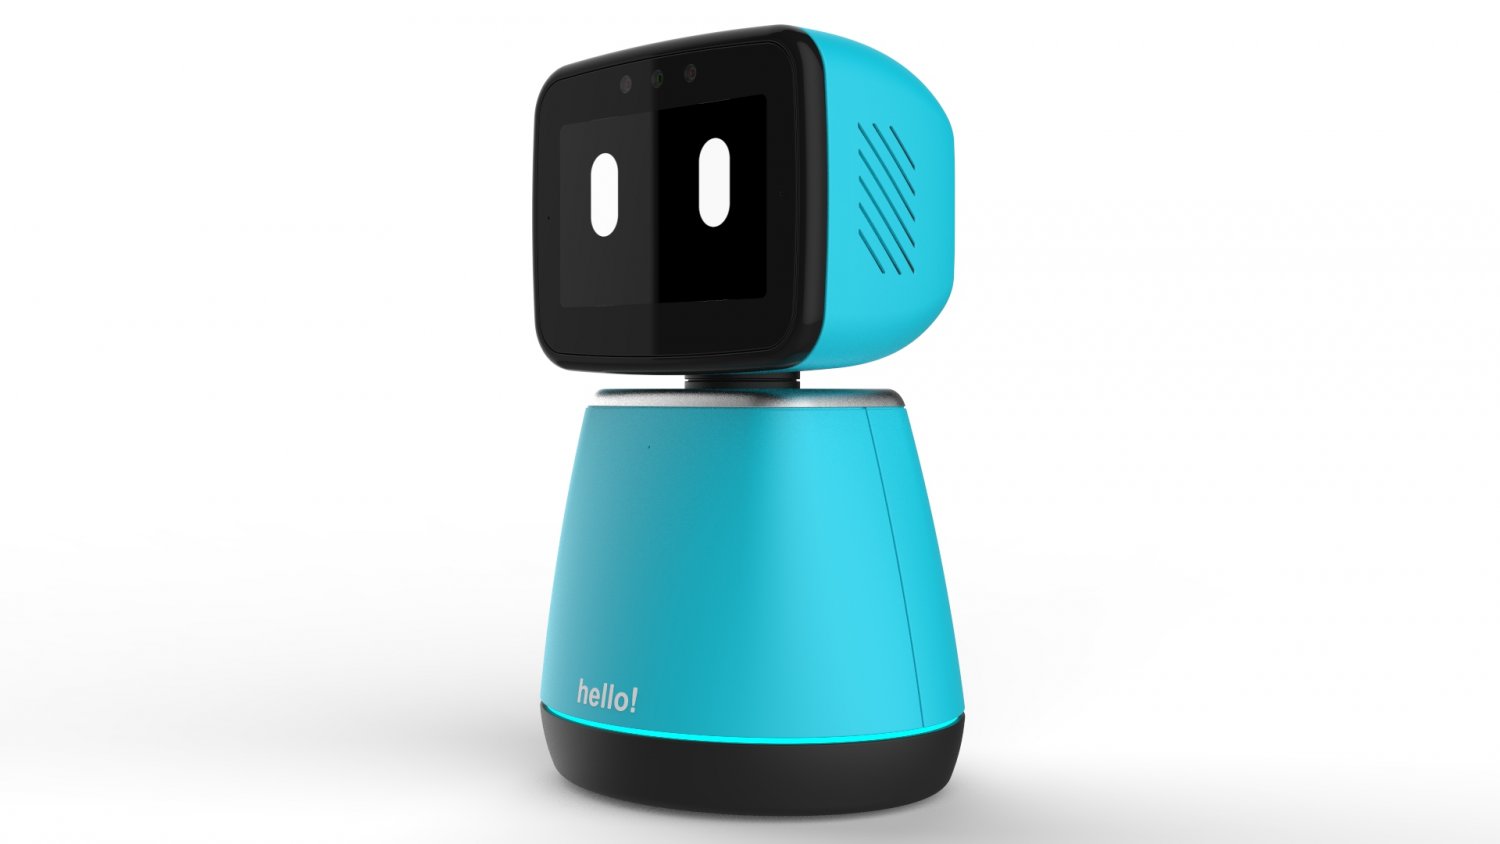 generic home assistant robot 01 light blue 3D Model in Robot 3DExport